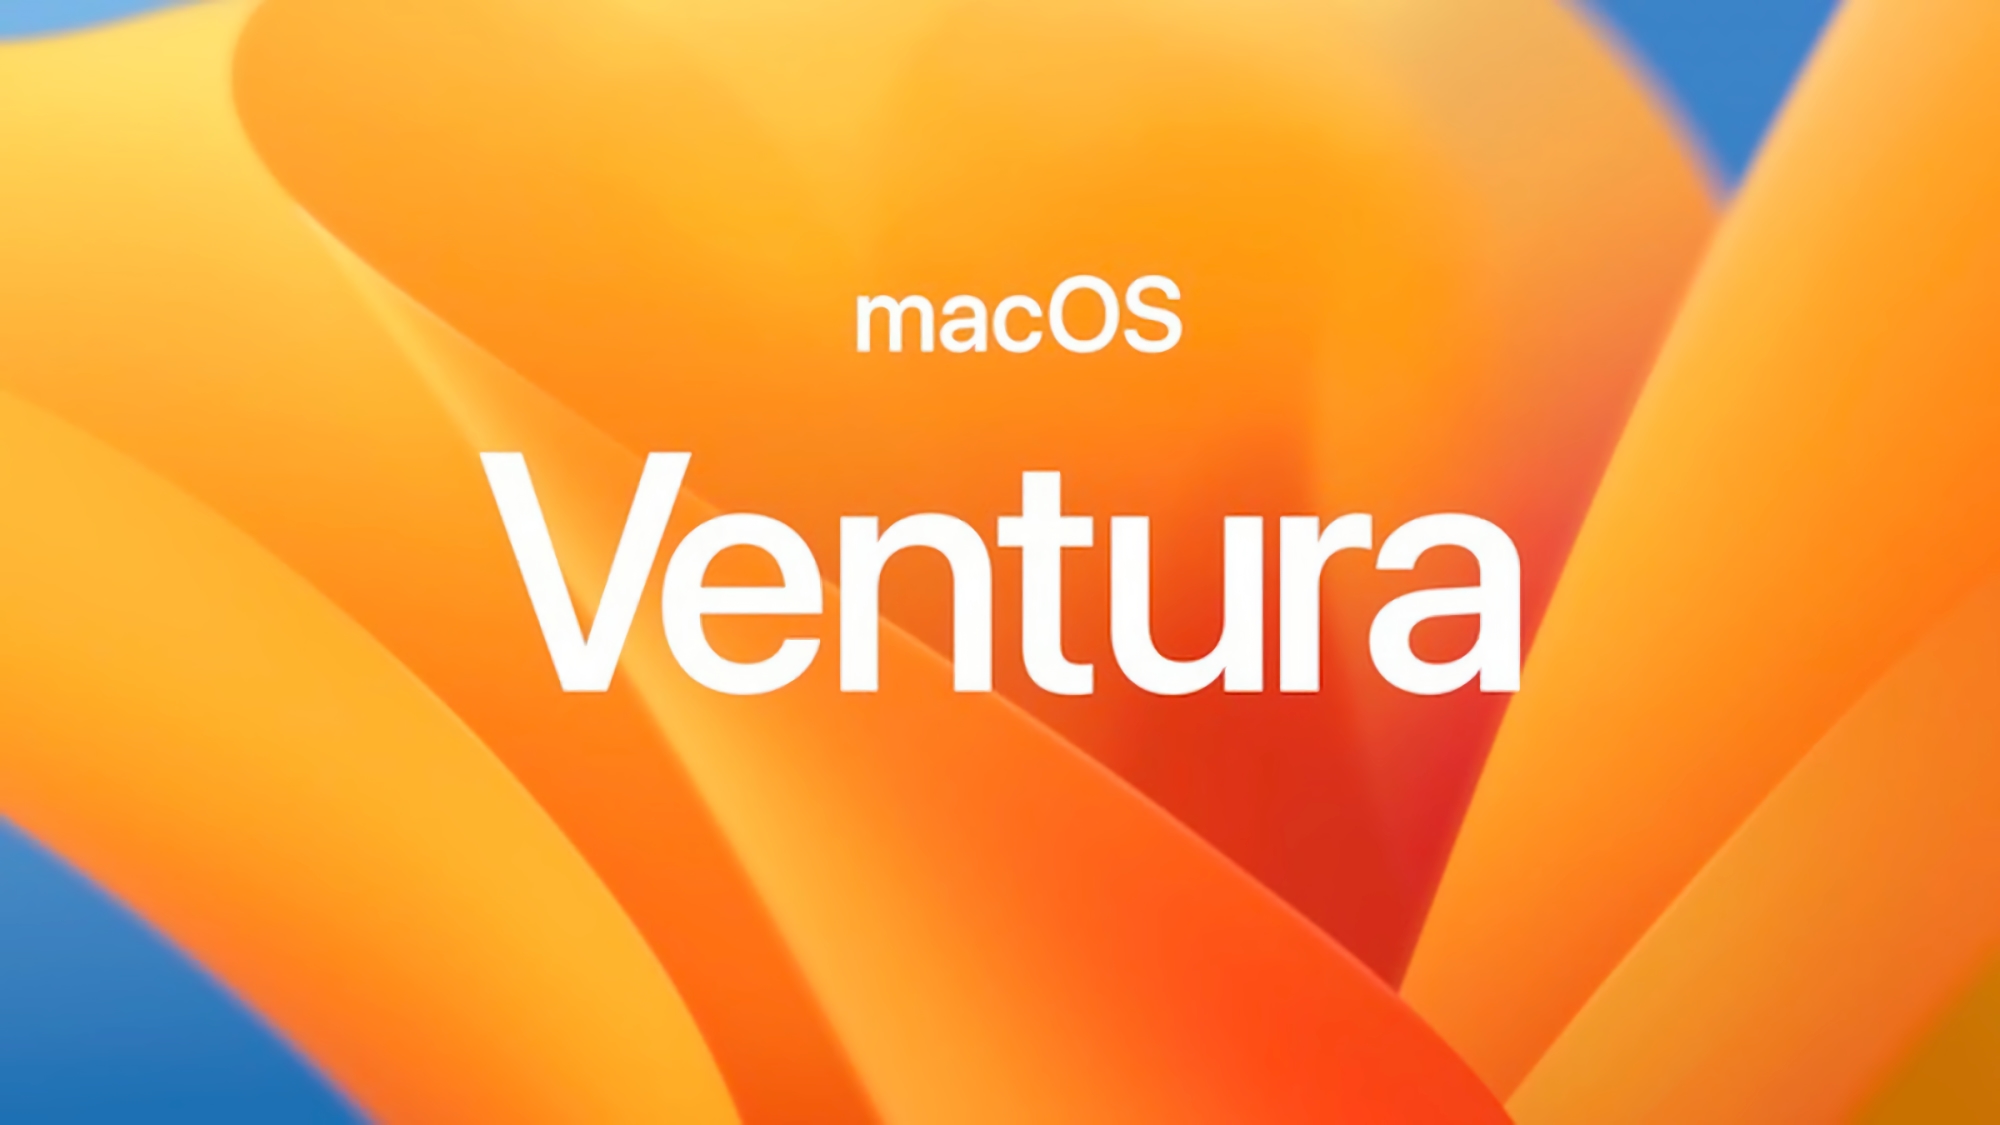 C'est arrivé ! La version stable de macOS Ventura est sortie.